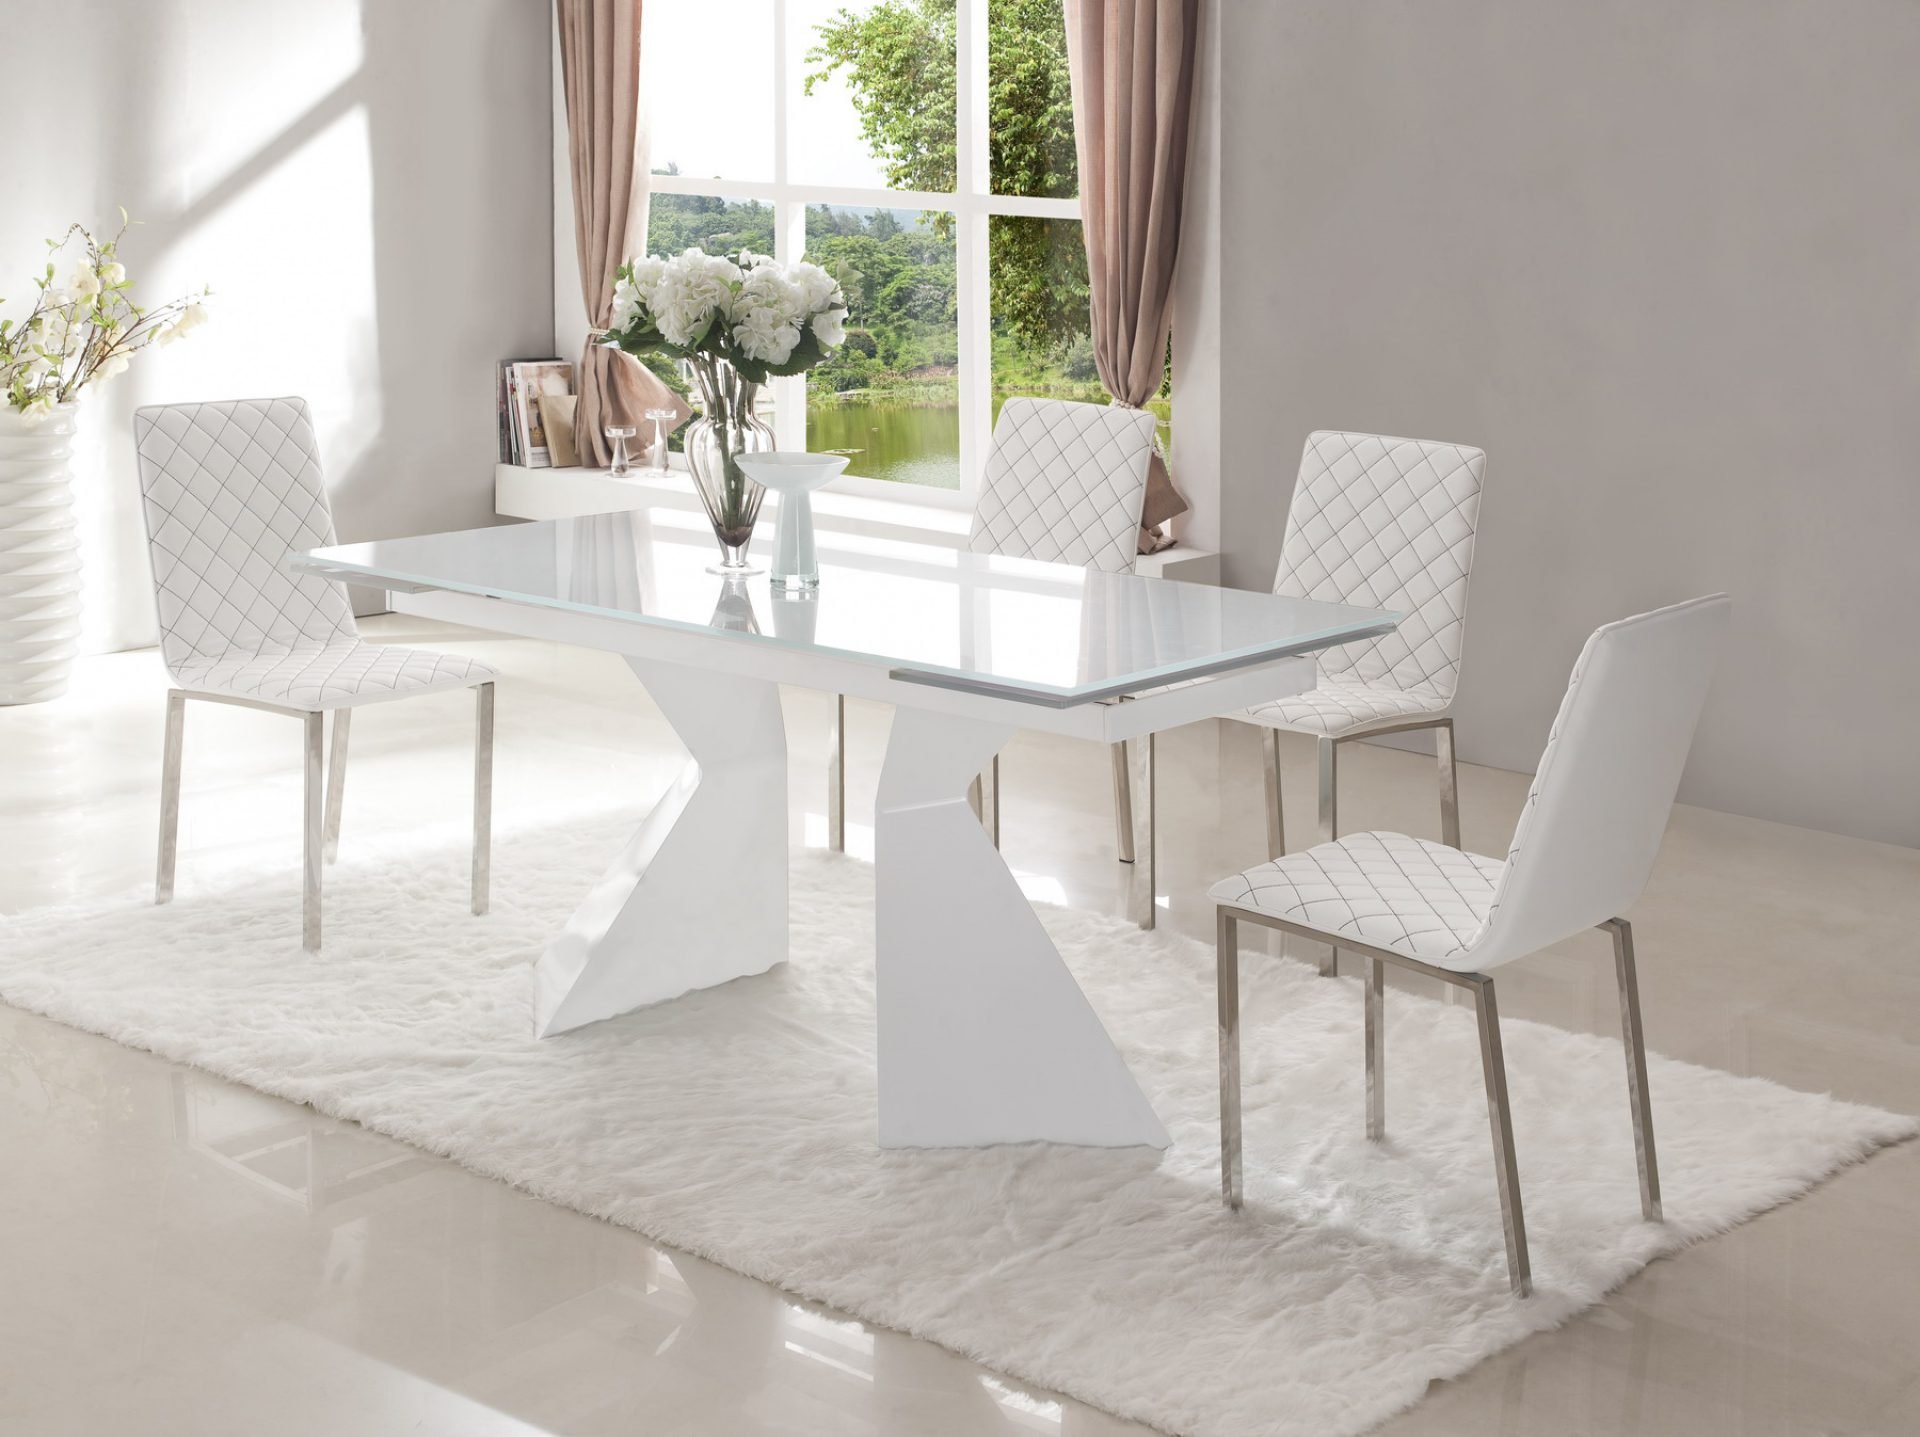 Стол кухонный для столовой. Стол ESF HT 2135. Стол ESF ct992 белый. Стол ESF DT-903 белый. DТ-04 (GH-t003) стол обеденный, белый 1200*800.